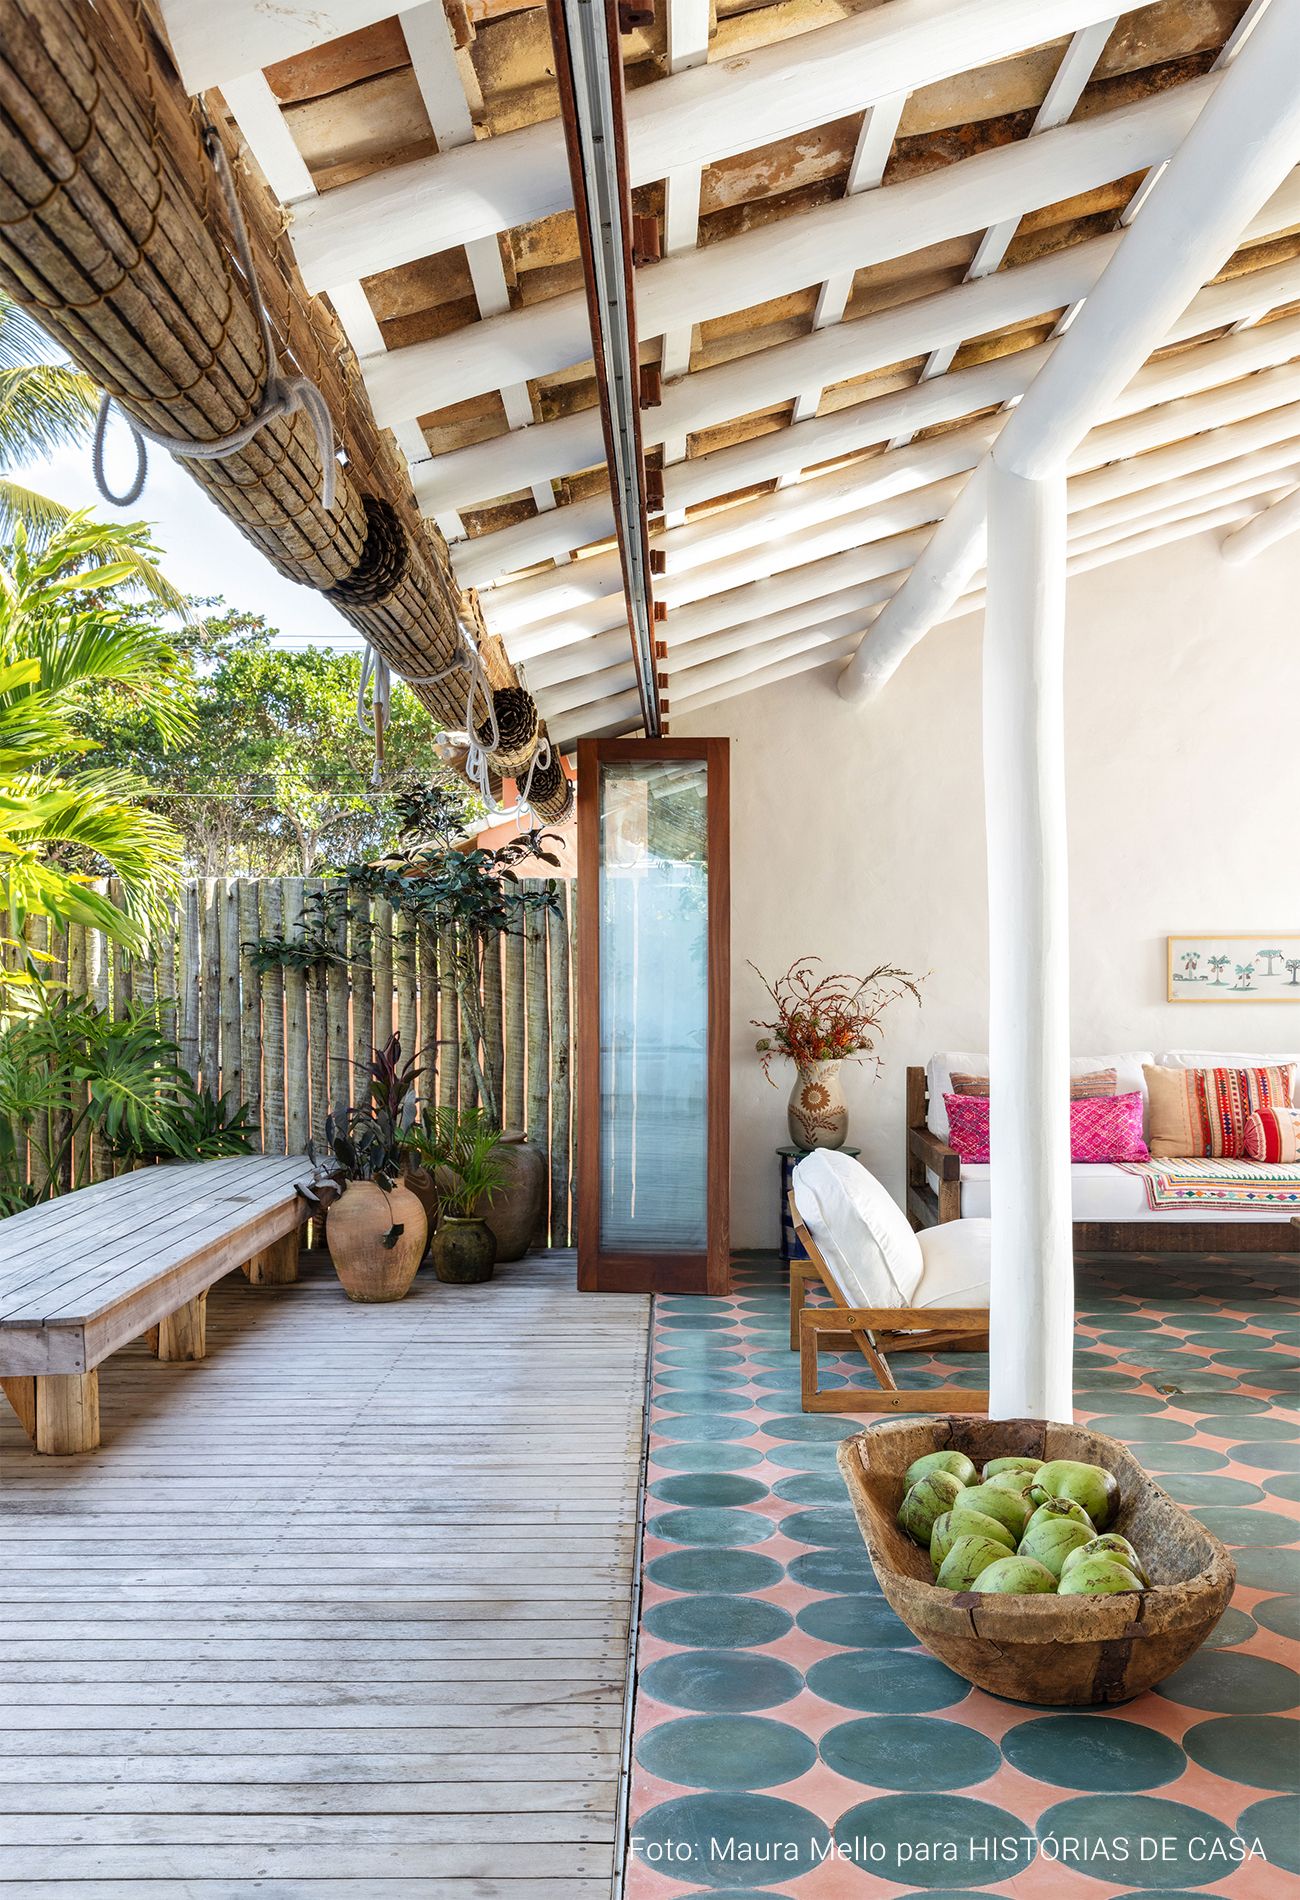 Casa com decoração praiana, uso de materiais naturais e área externa com piscina